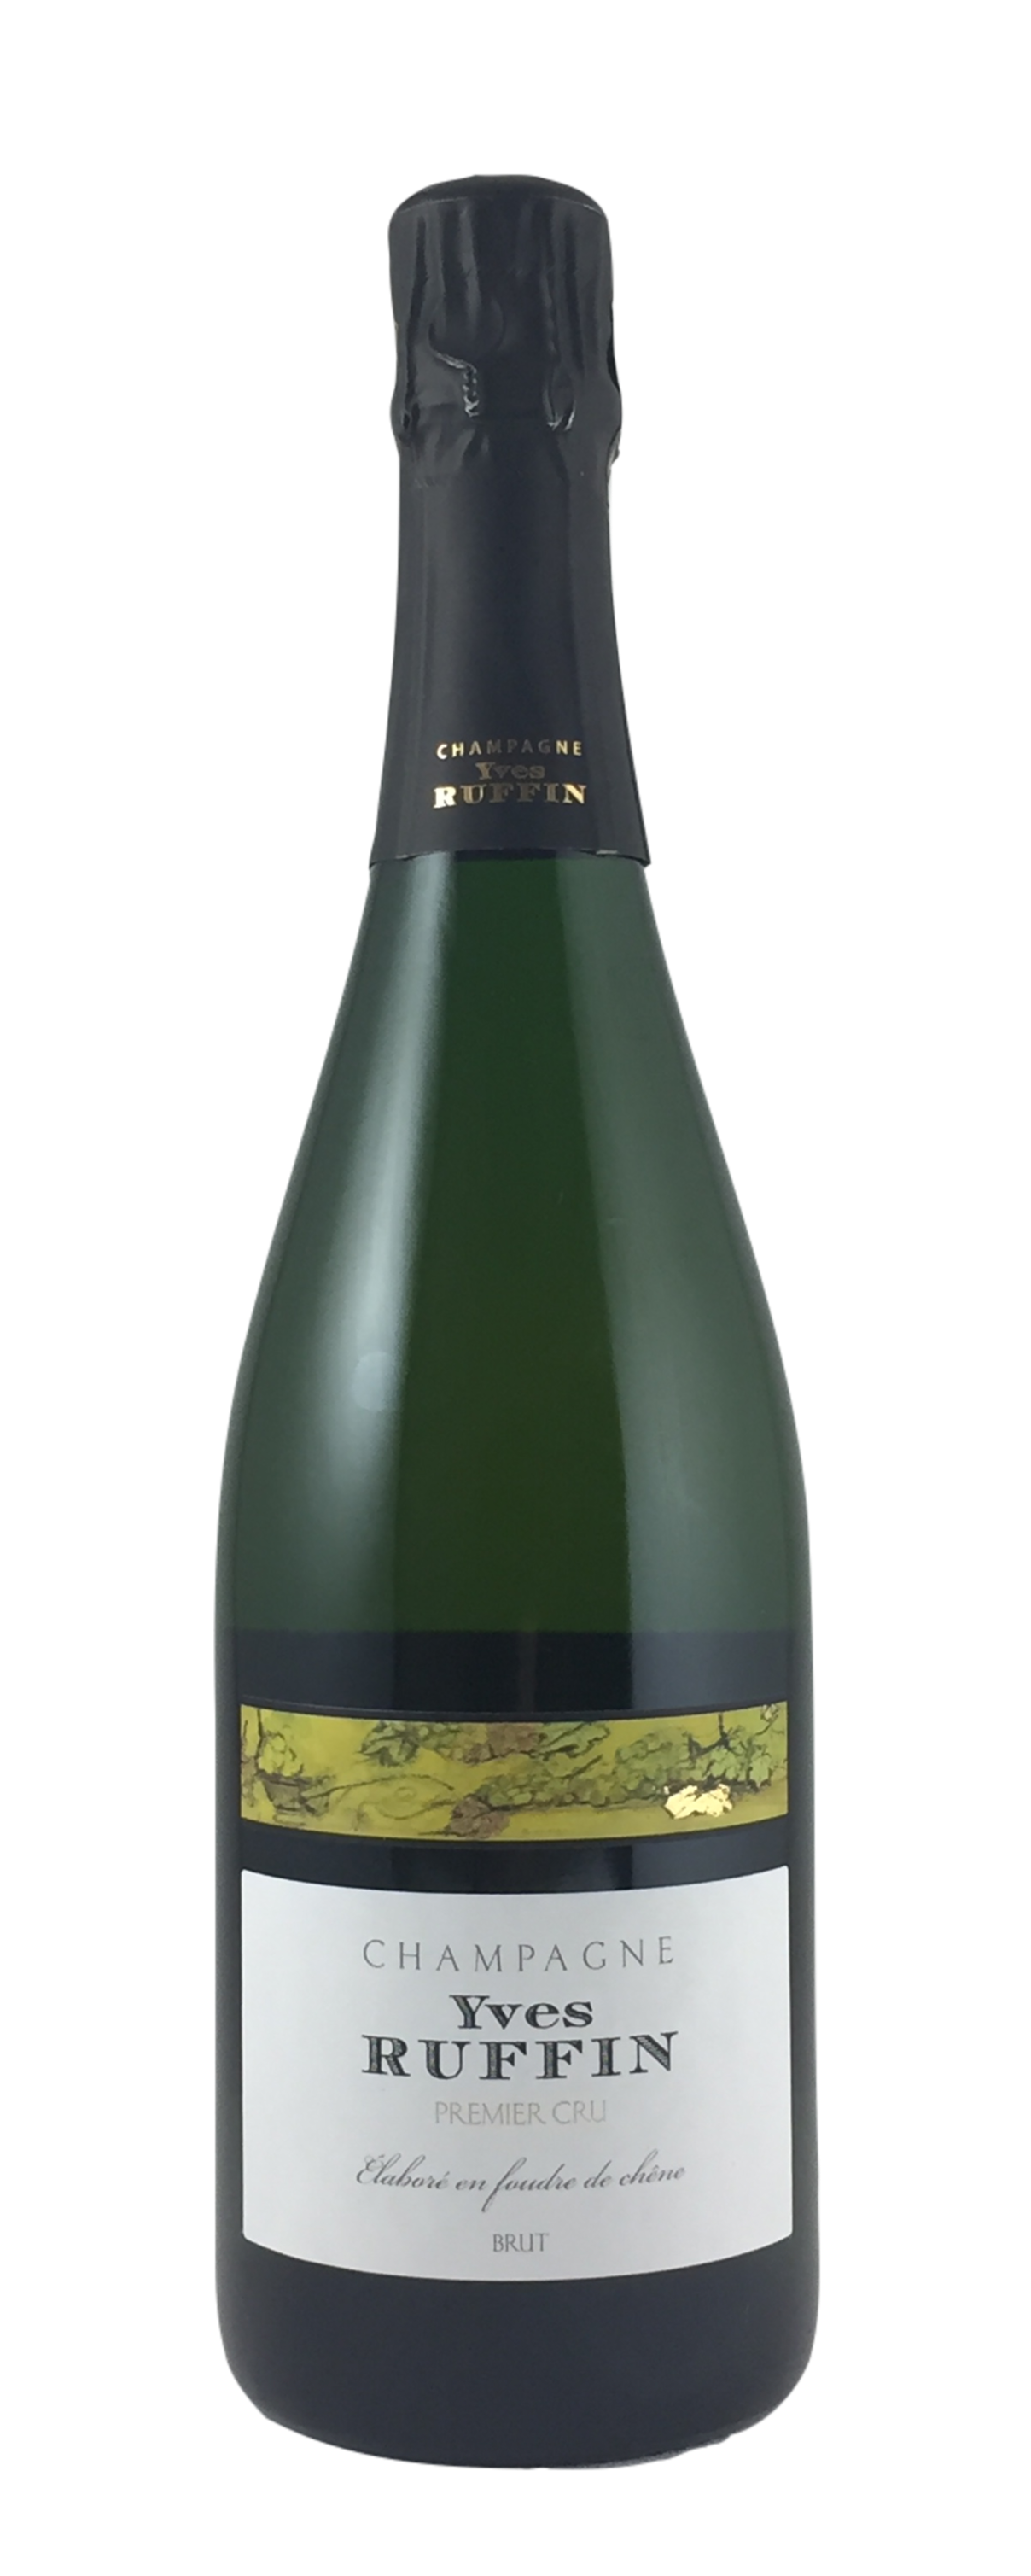  Champagne Yves Ruffin - Premier Cru brut Magnum